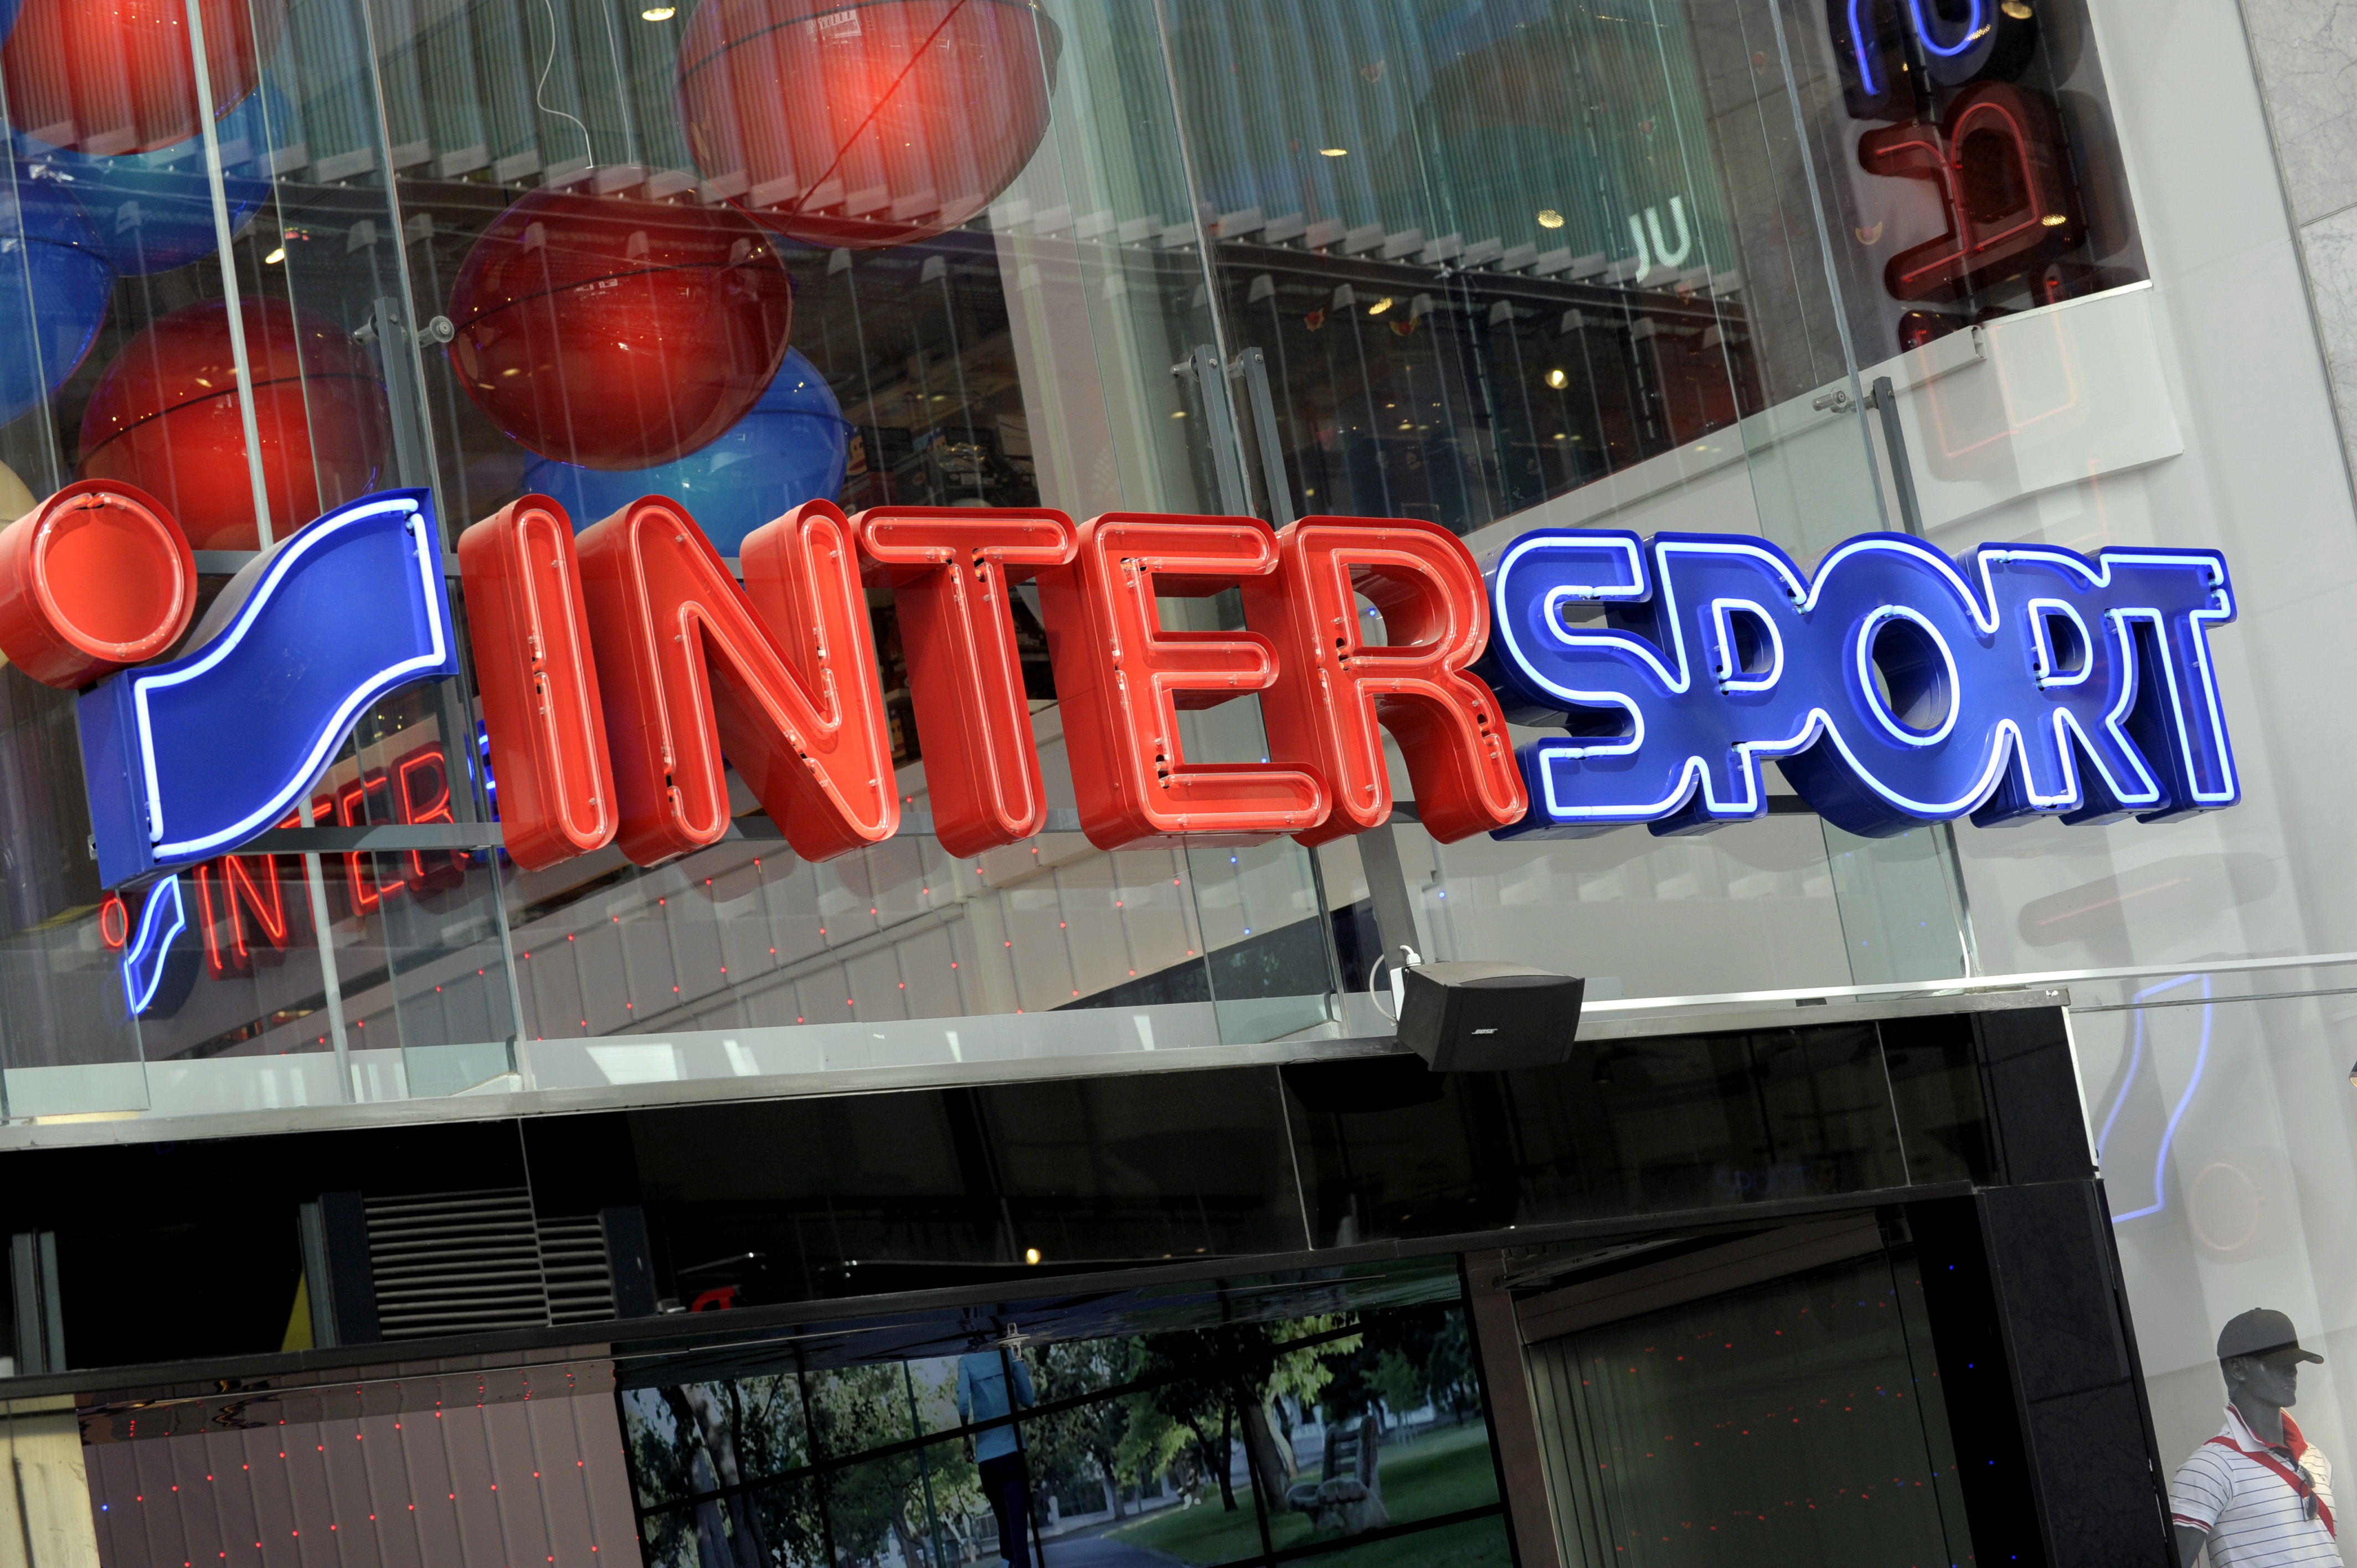 Intersport som är en av de absolut största sponsorerna kommer att se över nästa års avtal.